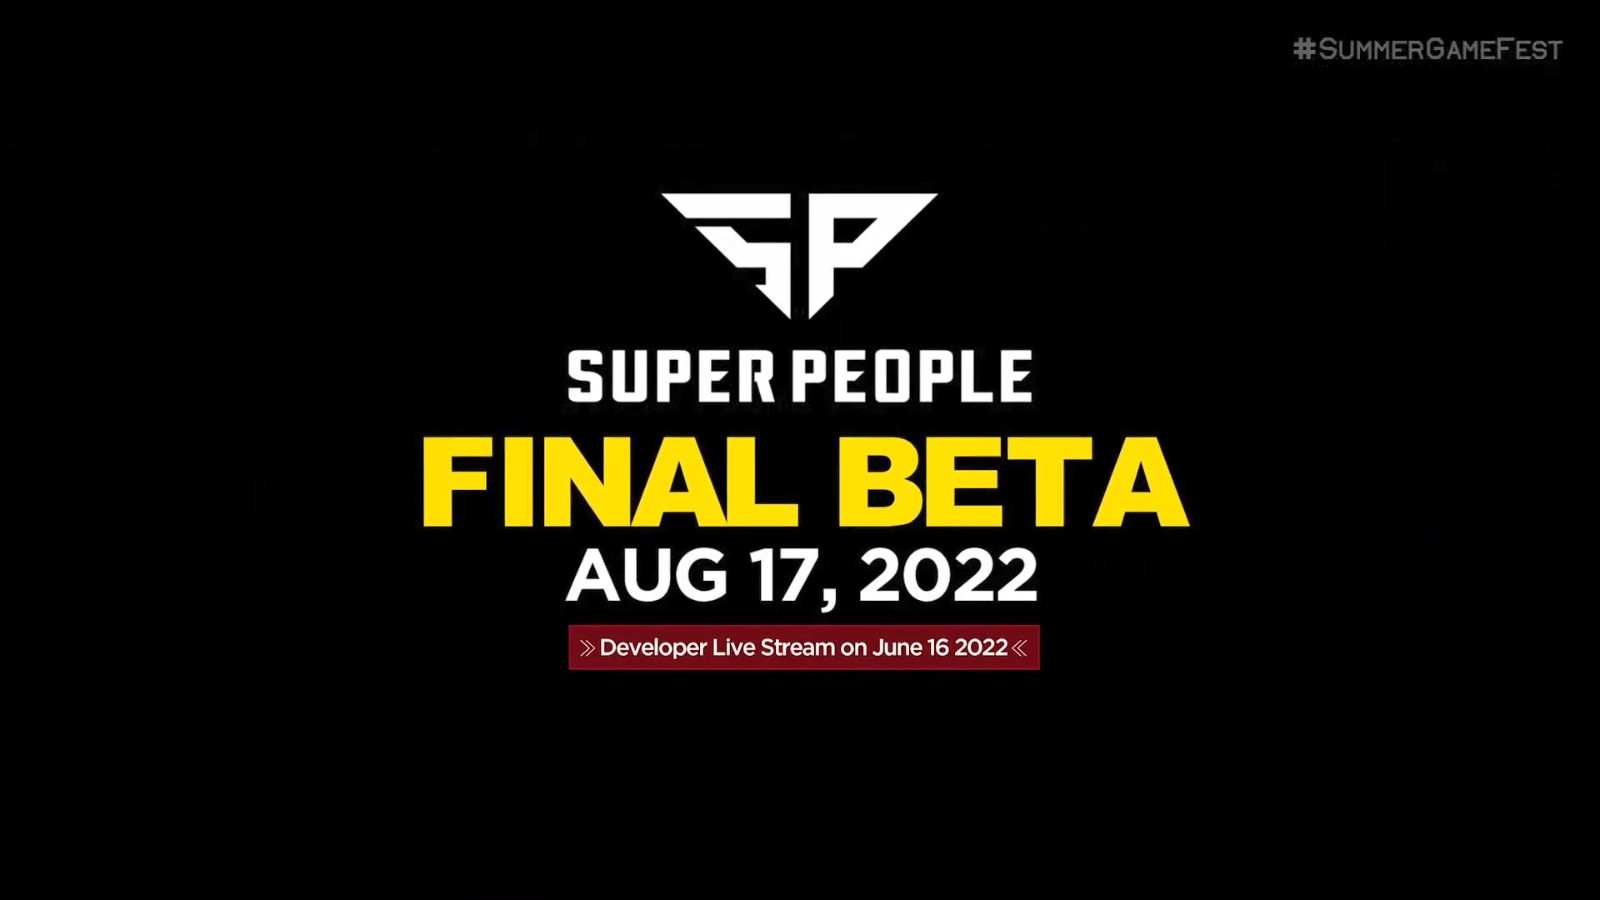 吃鸡游戏《超级人类》宣布最终Beta测试 8月17日开启